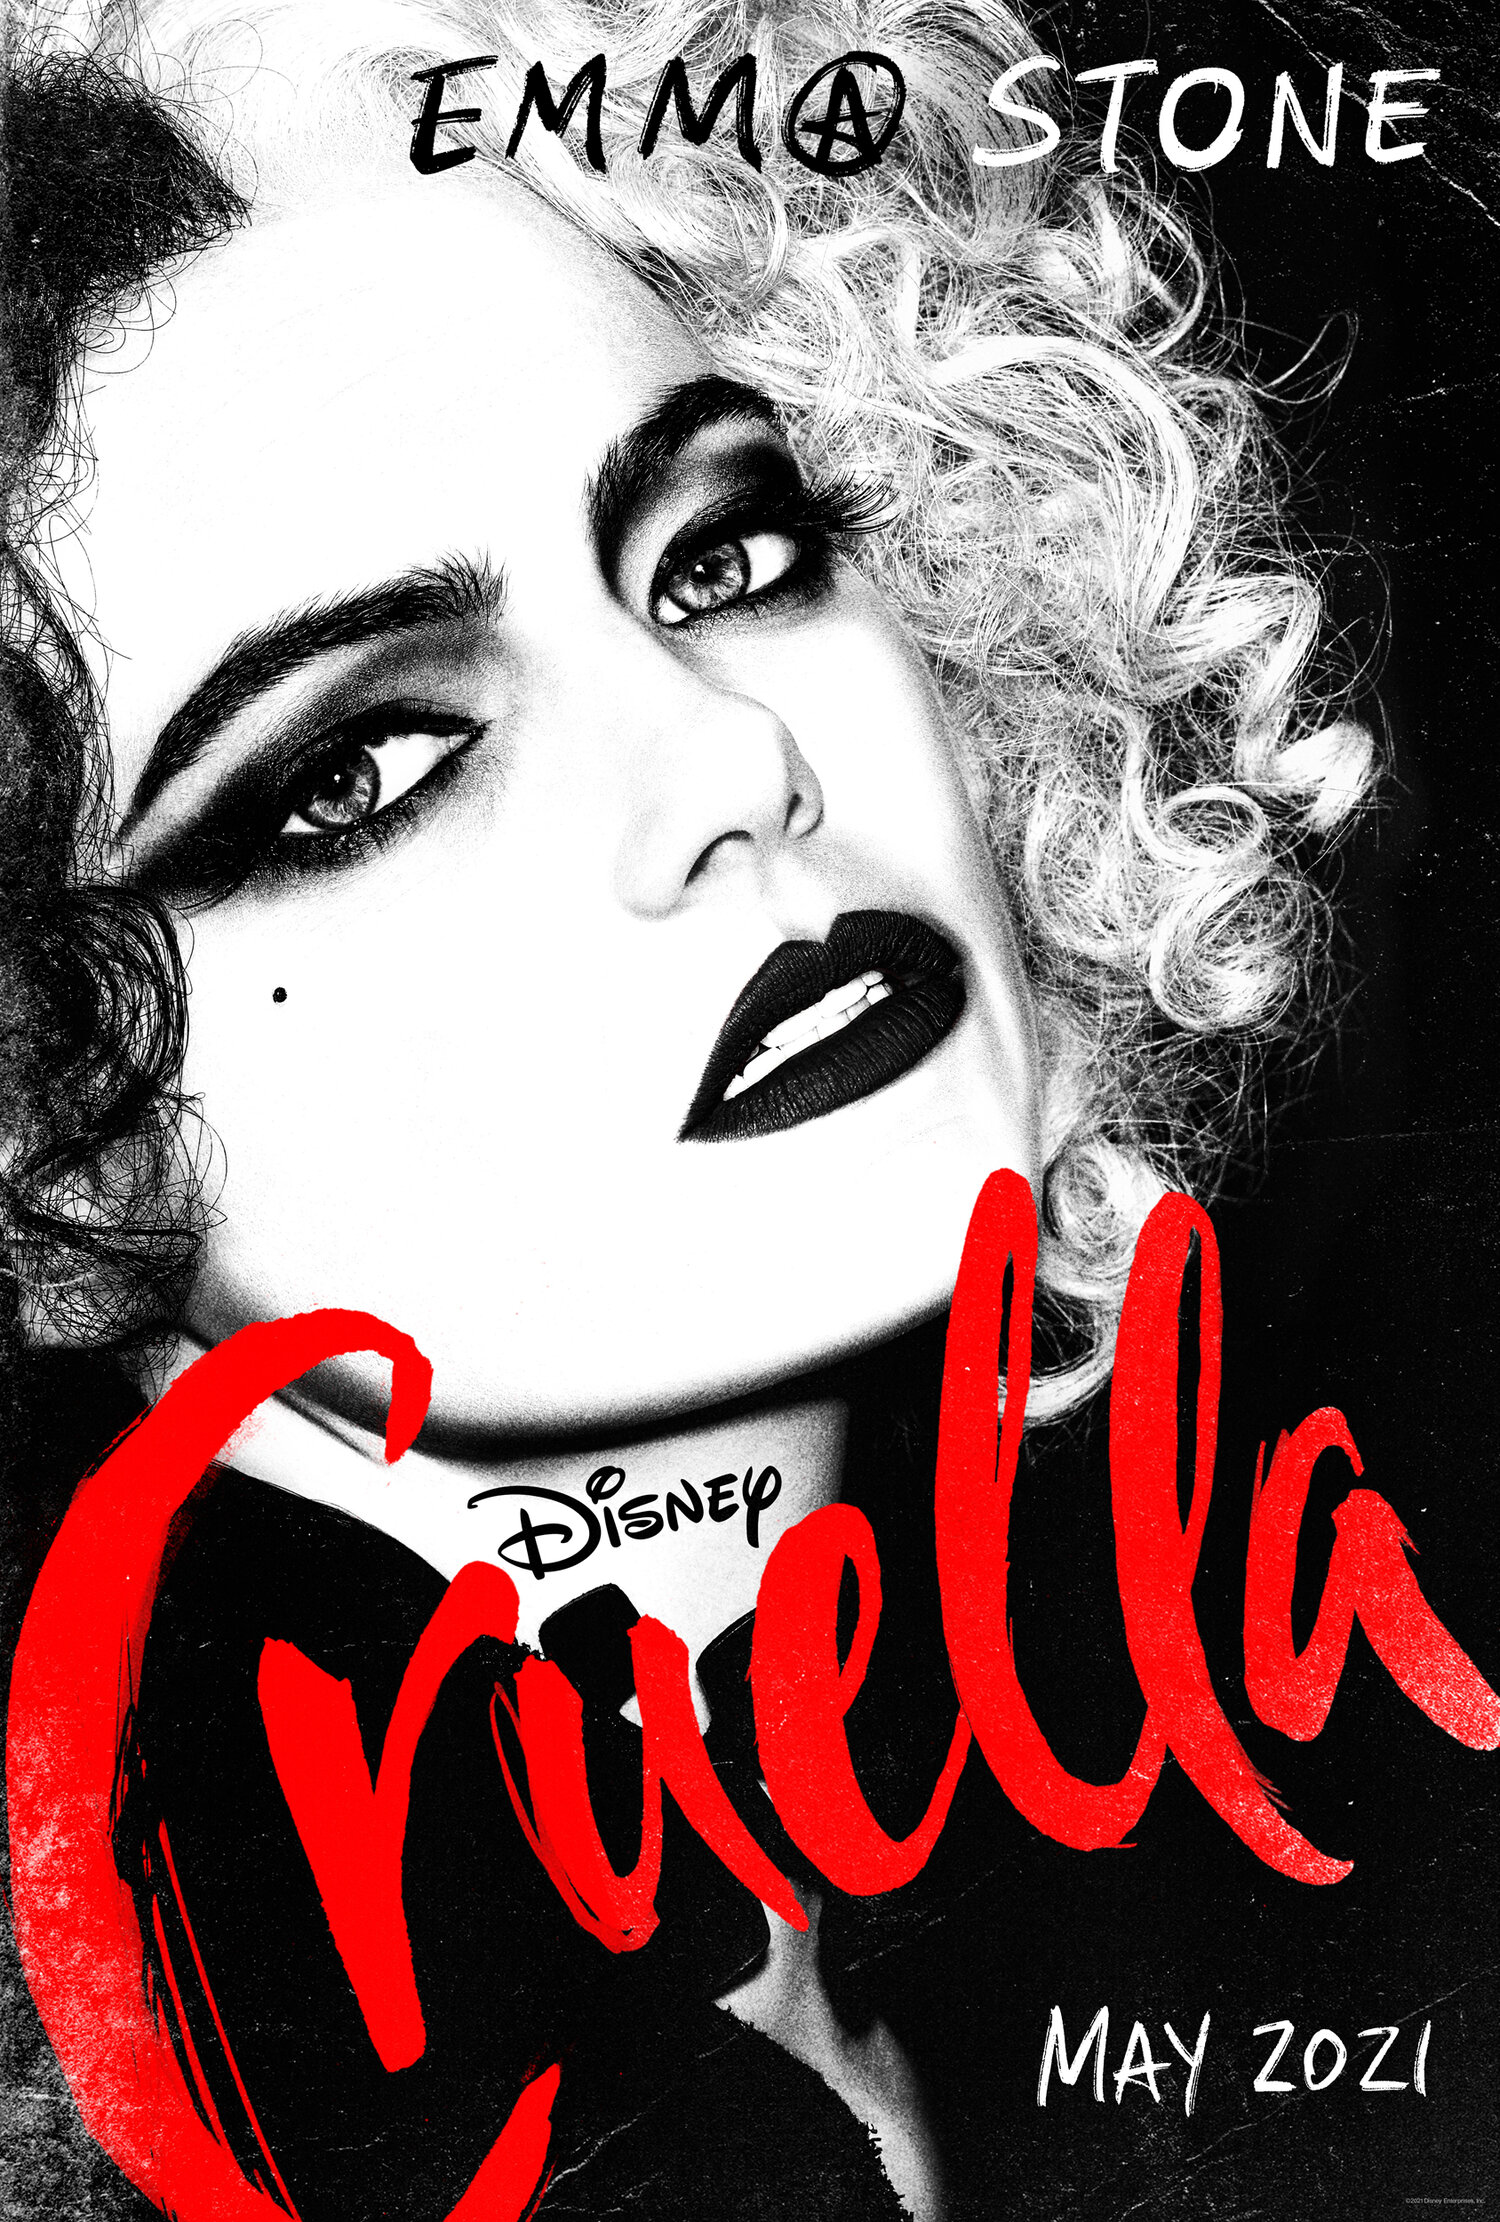 Cruella's Costume Designer Reveals The Film's Most Iconic Looks